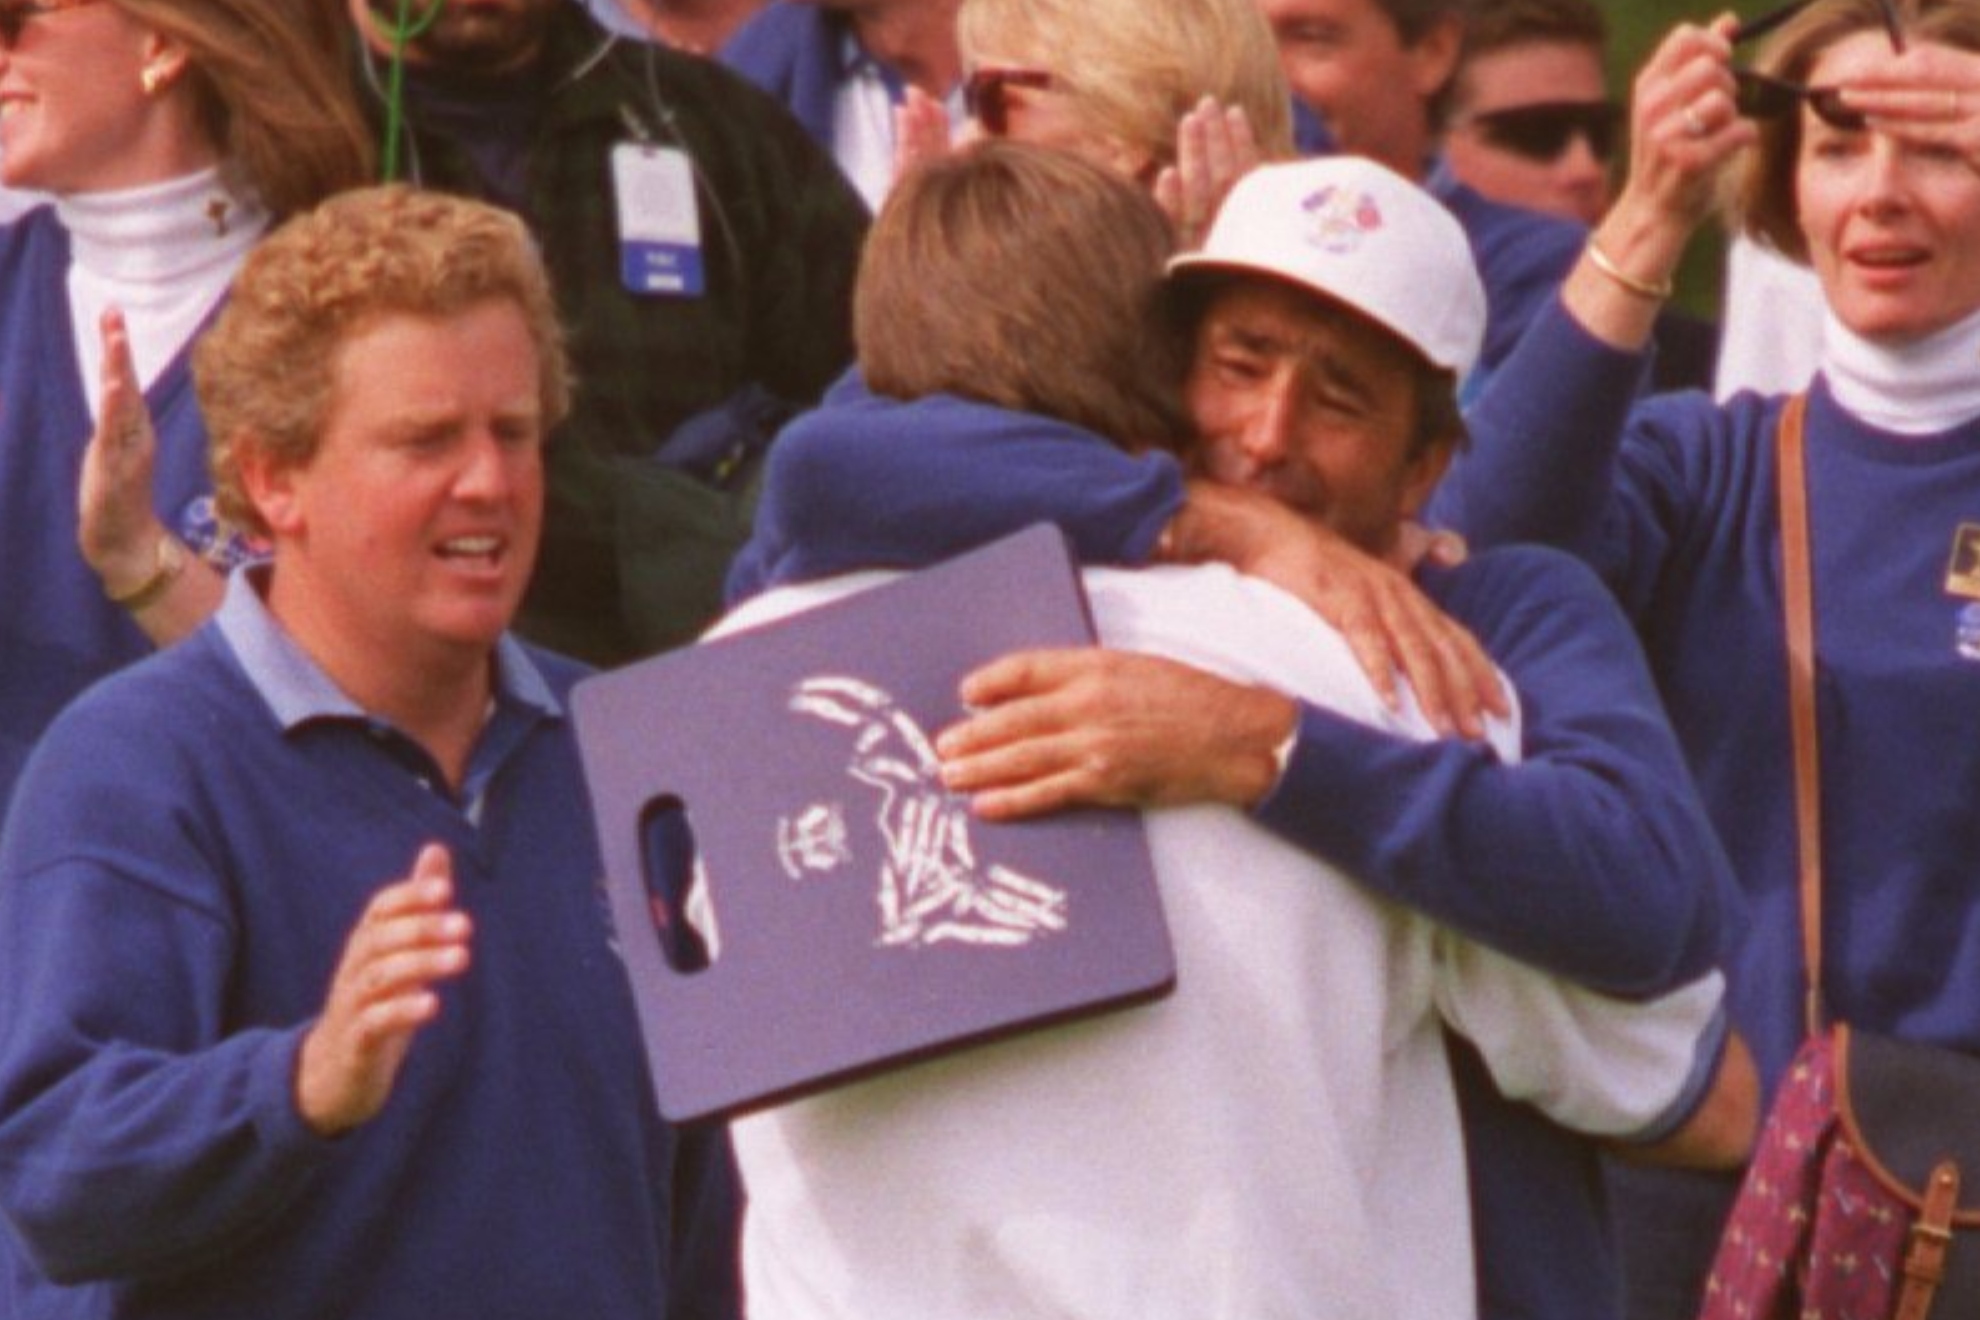 Severiano Ballesteros abraza a Nick Faldo después de que este metiera el putt con el que ganó a Curtis Strange en la Ryder Cup de 1995. A la izquierda de la imagen, Montgomerie se acerca a ellos.